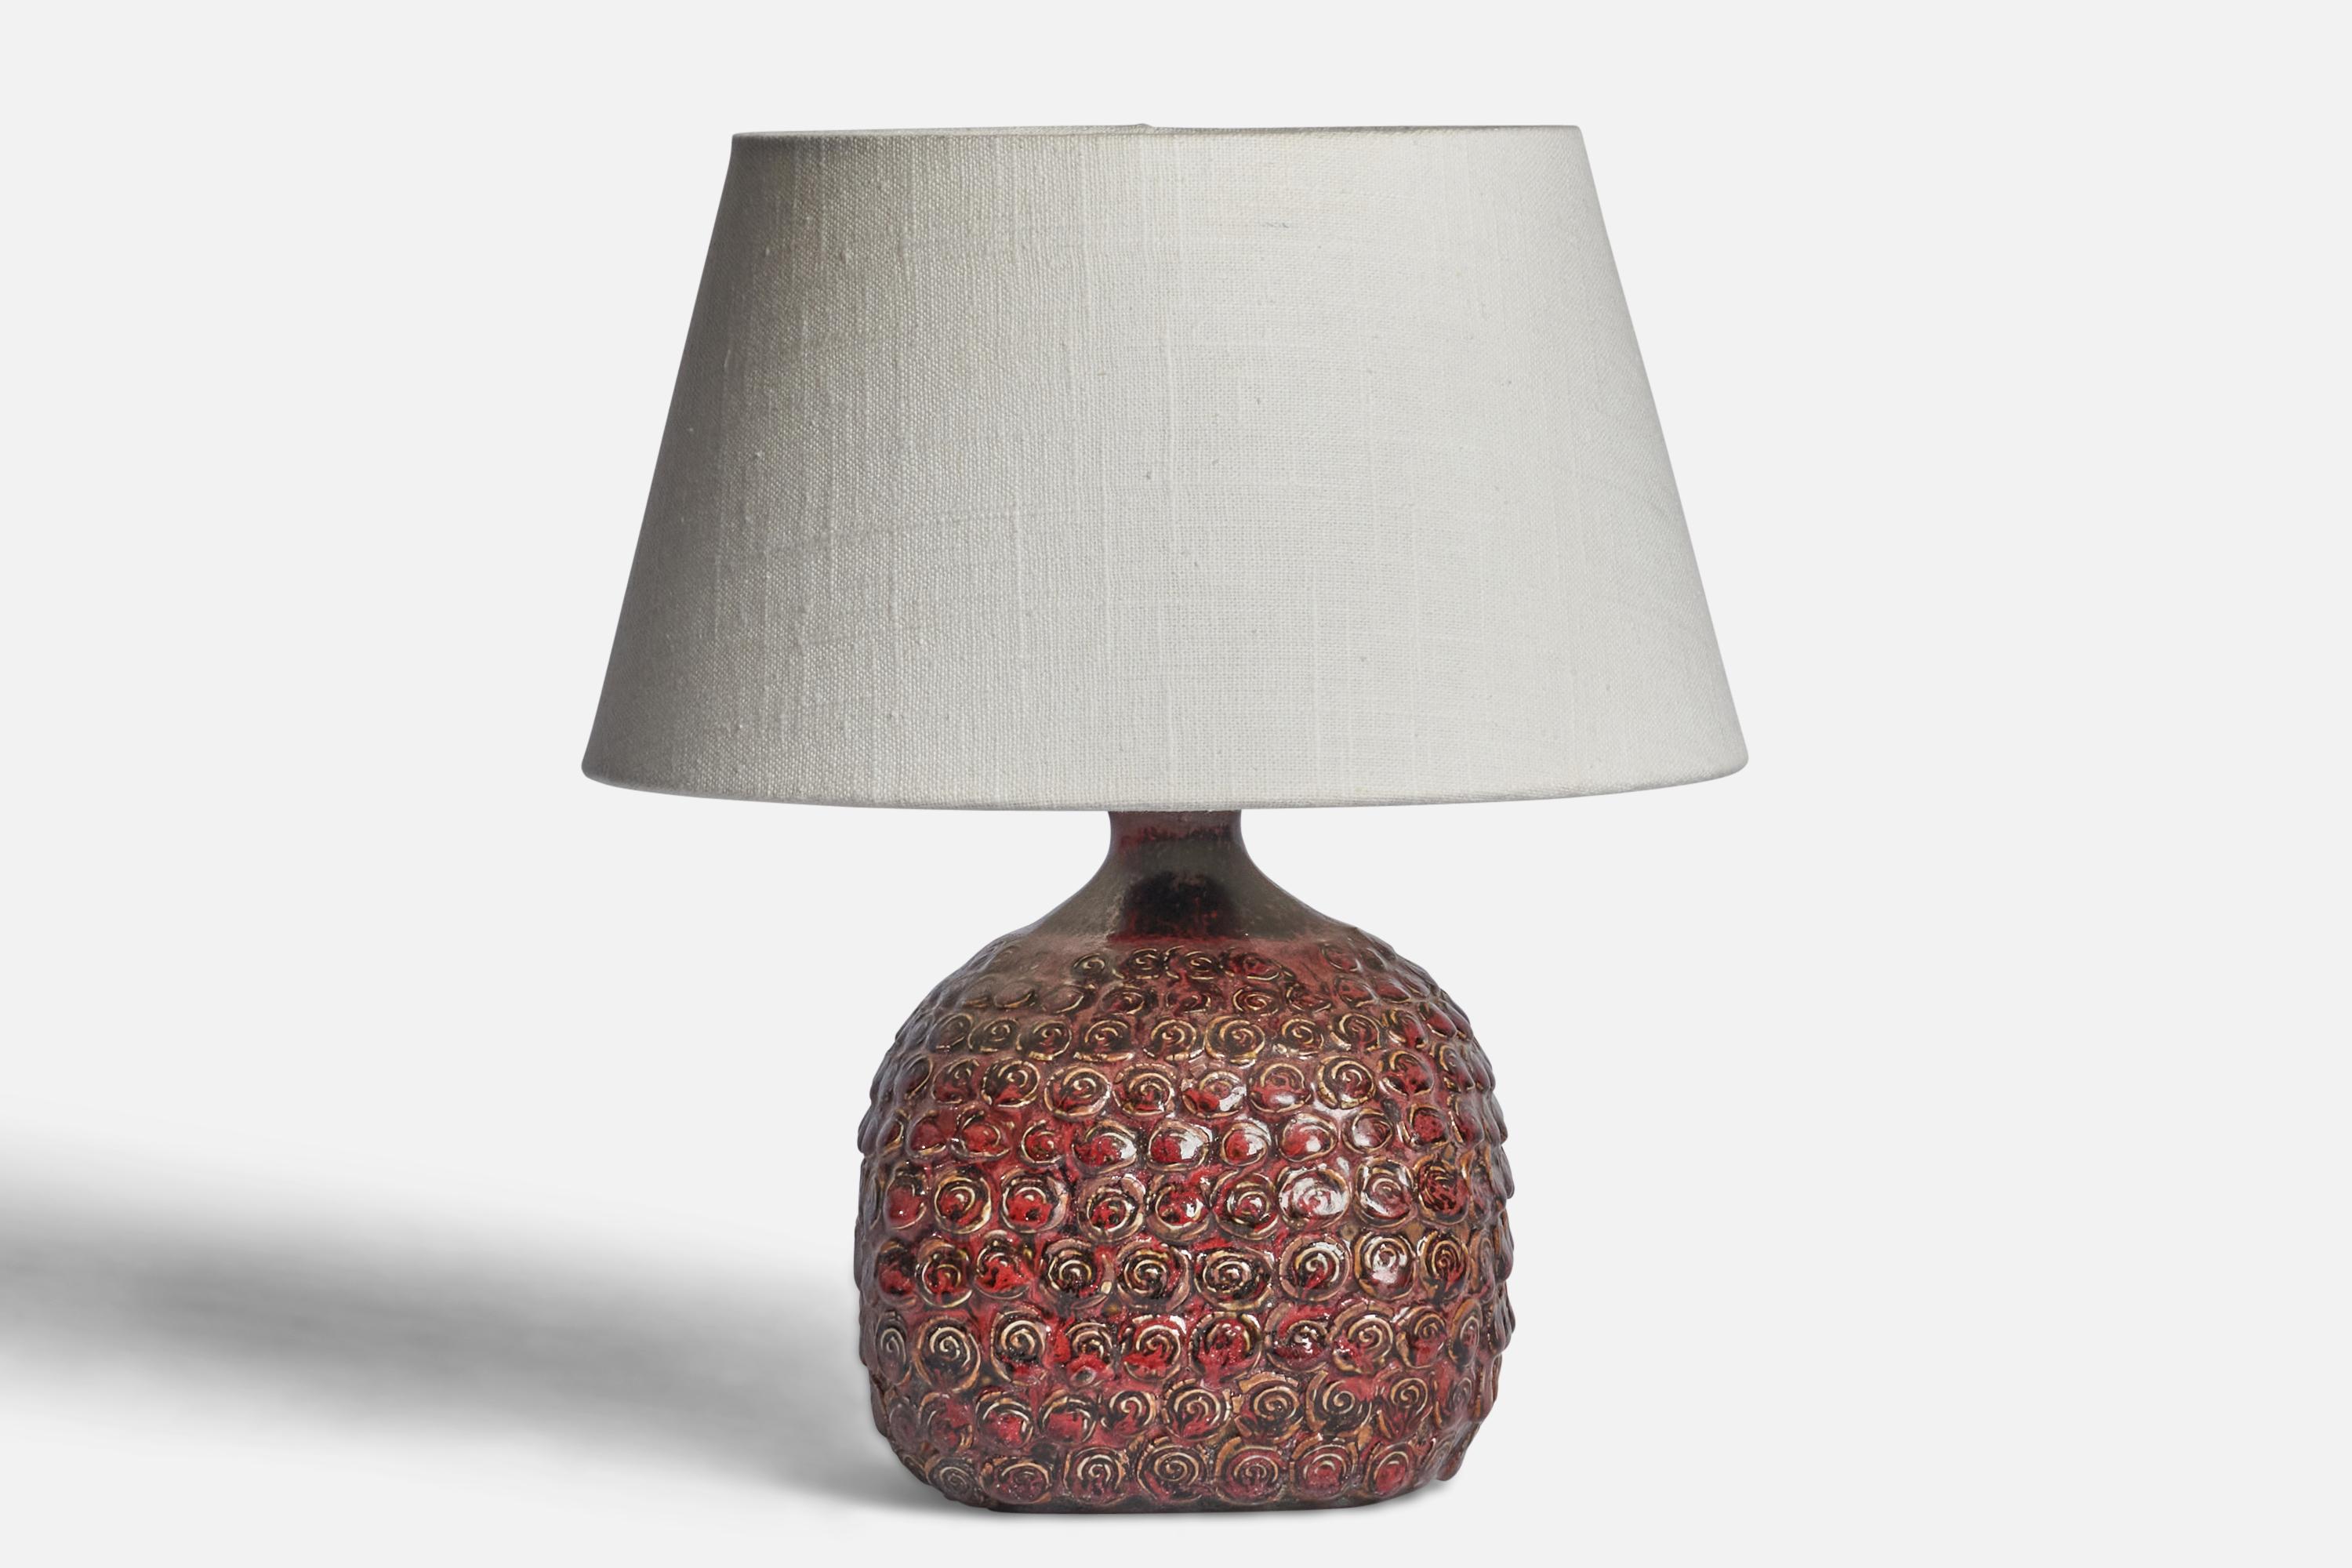 Tischlampe aus rot glasiertem Steingut, entworfen und hergestellt in Dänemark, ca. 1960er Jahre.

Abmessungen der Lampe (Zoll): 9